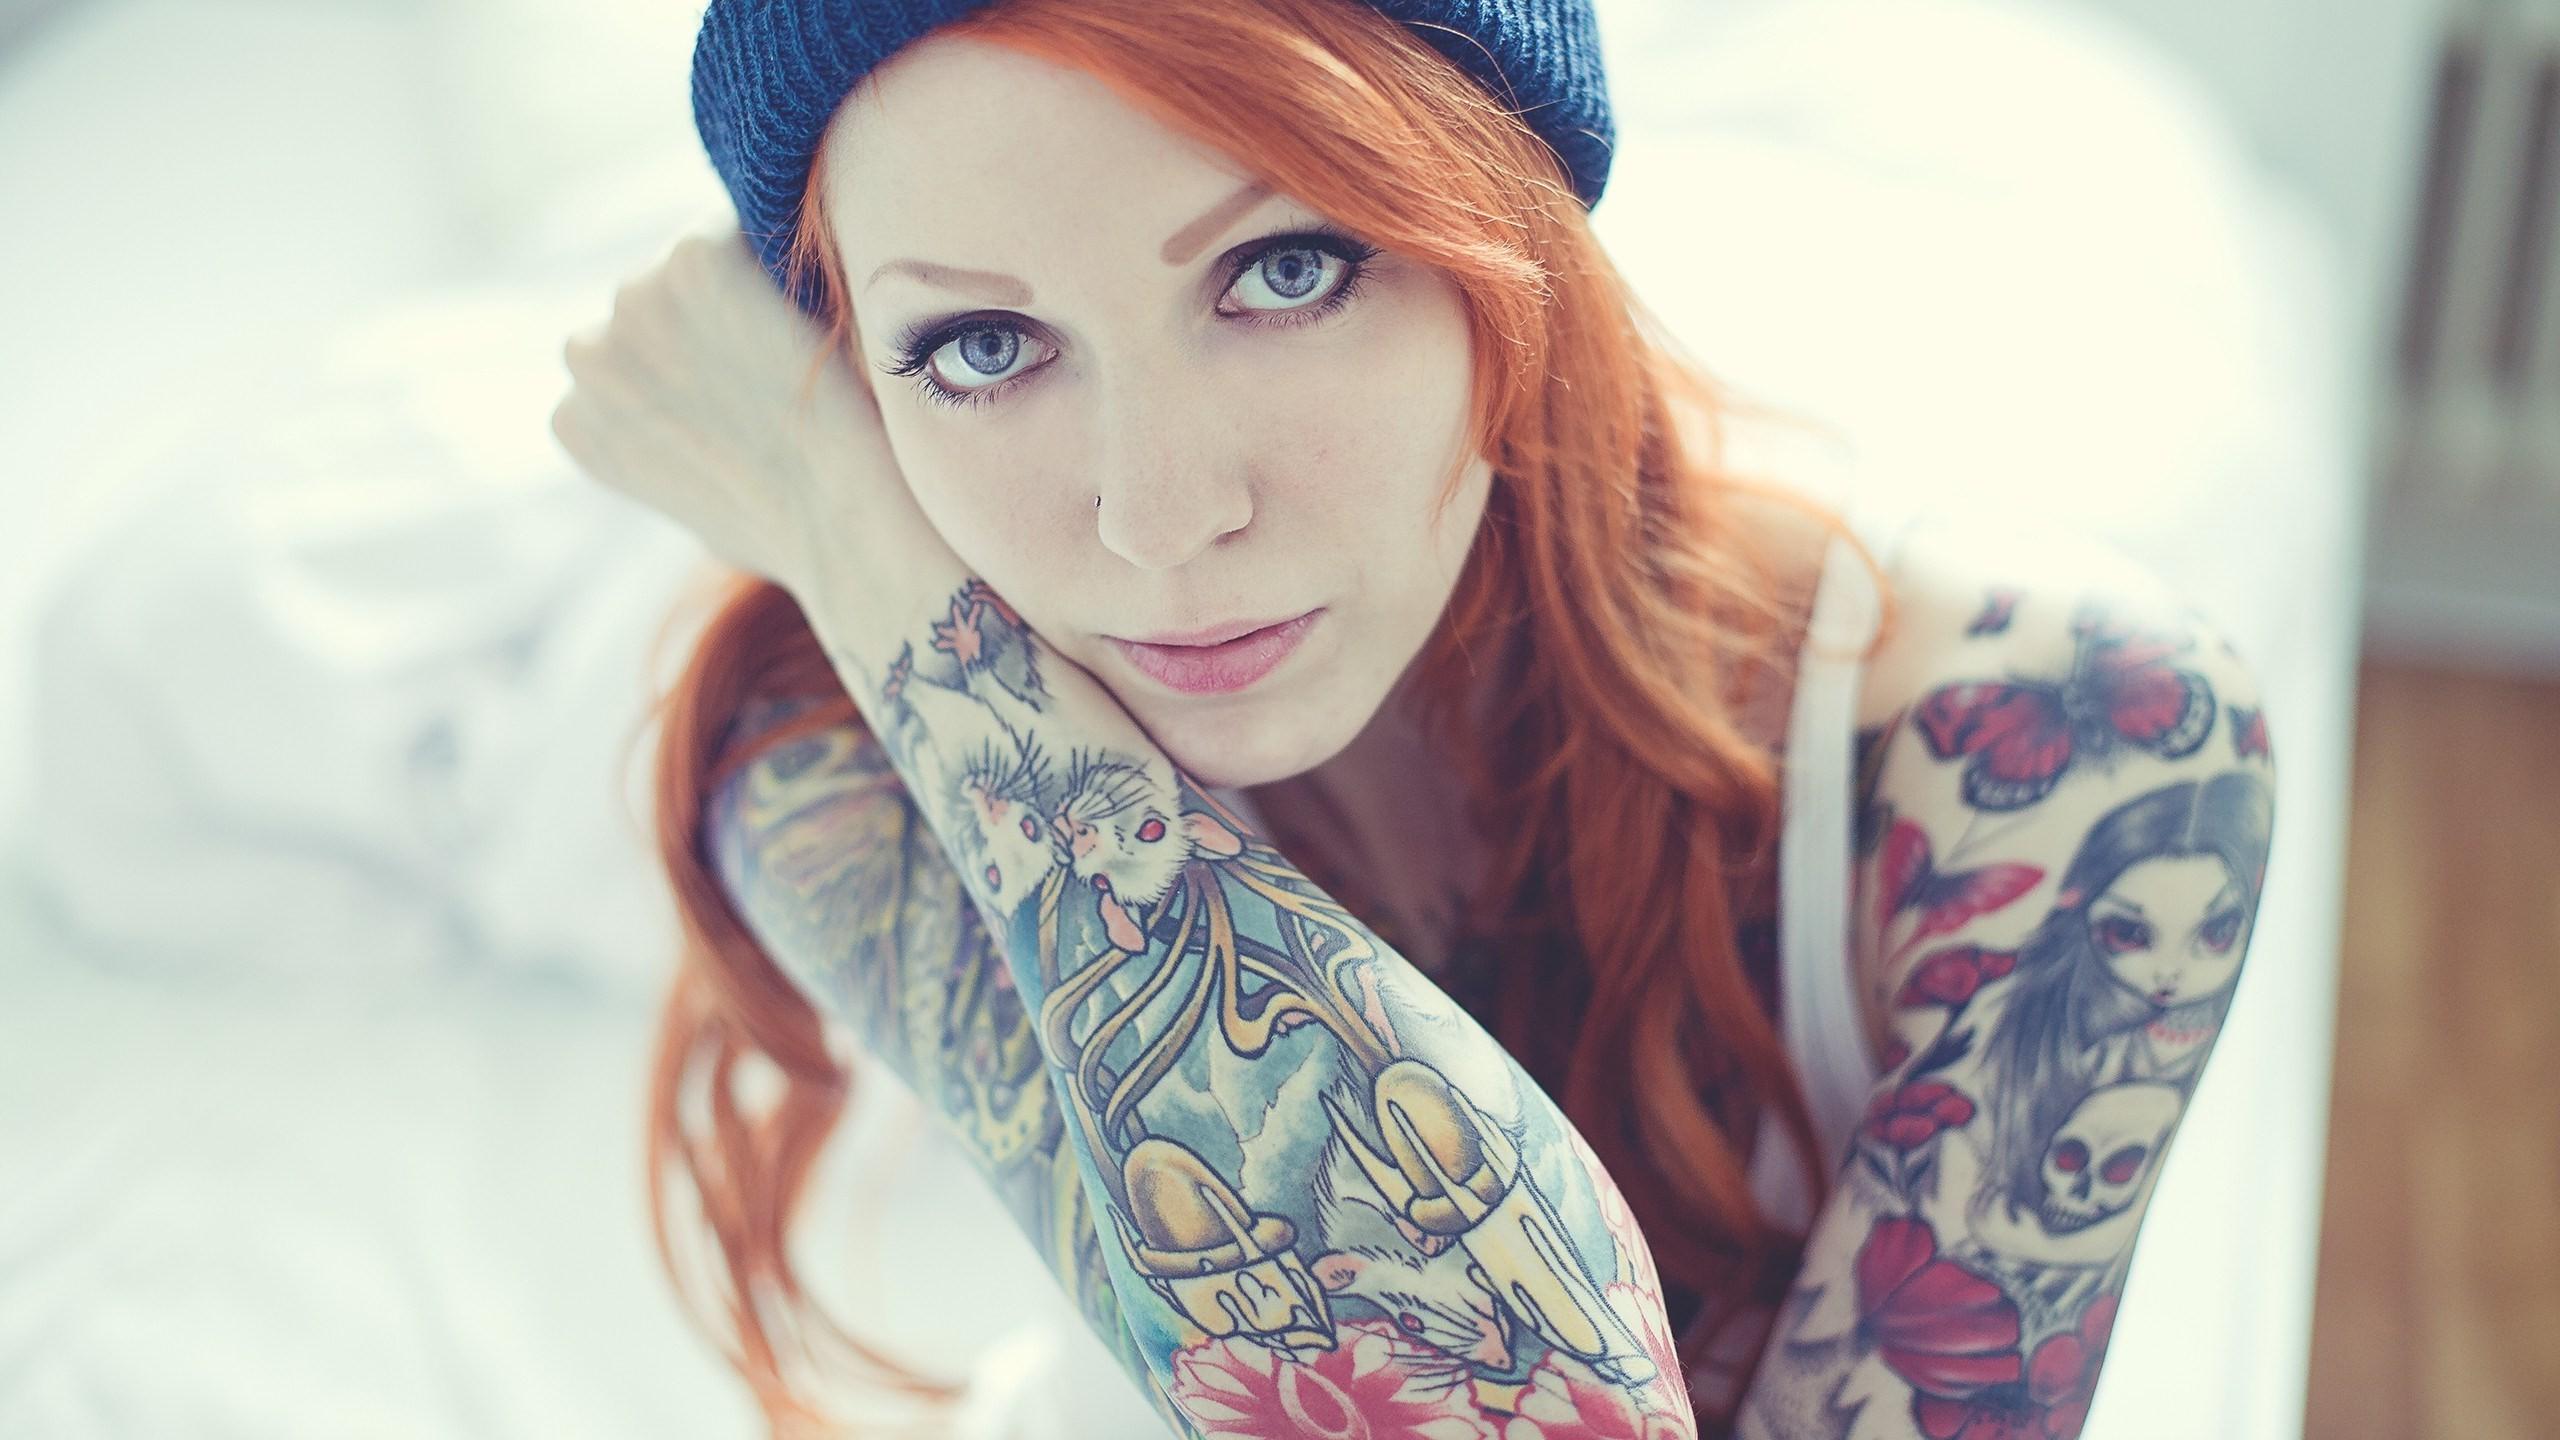 Girls Woman Tattoo Tattooed redhead HD Wallpapers, Desktop